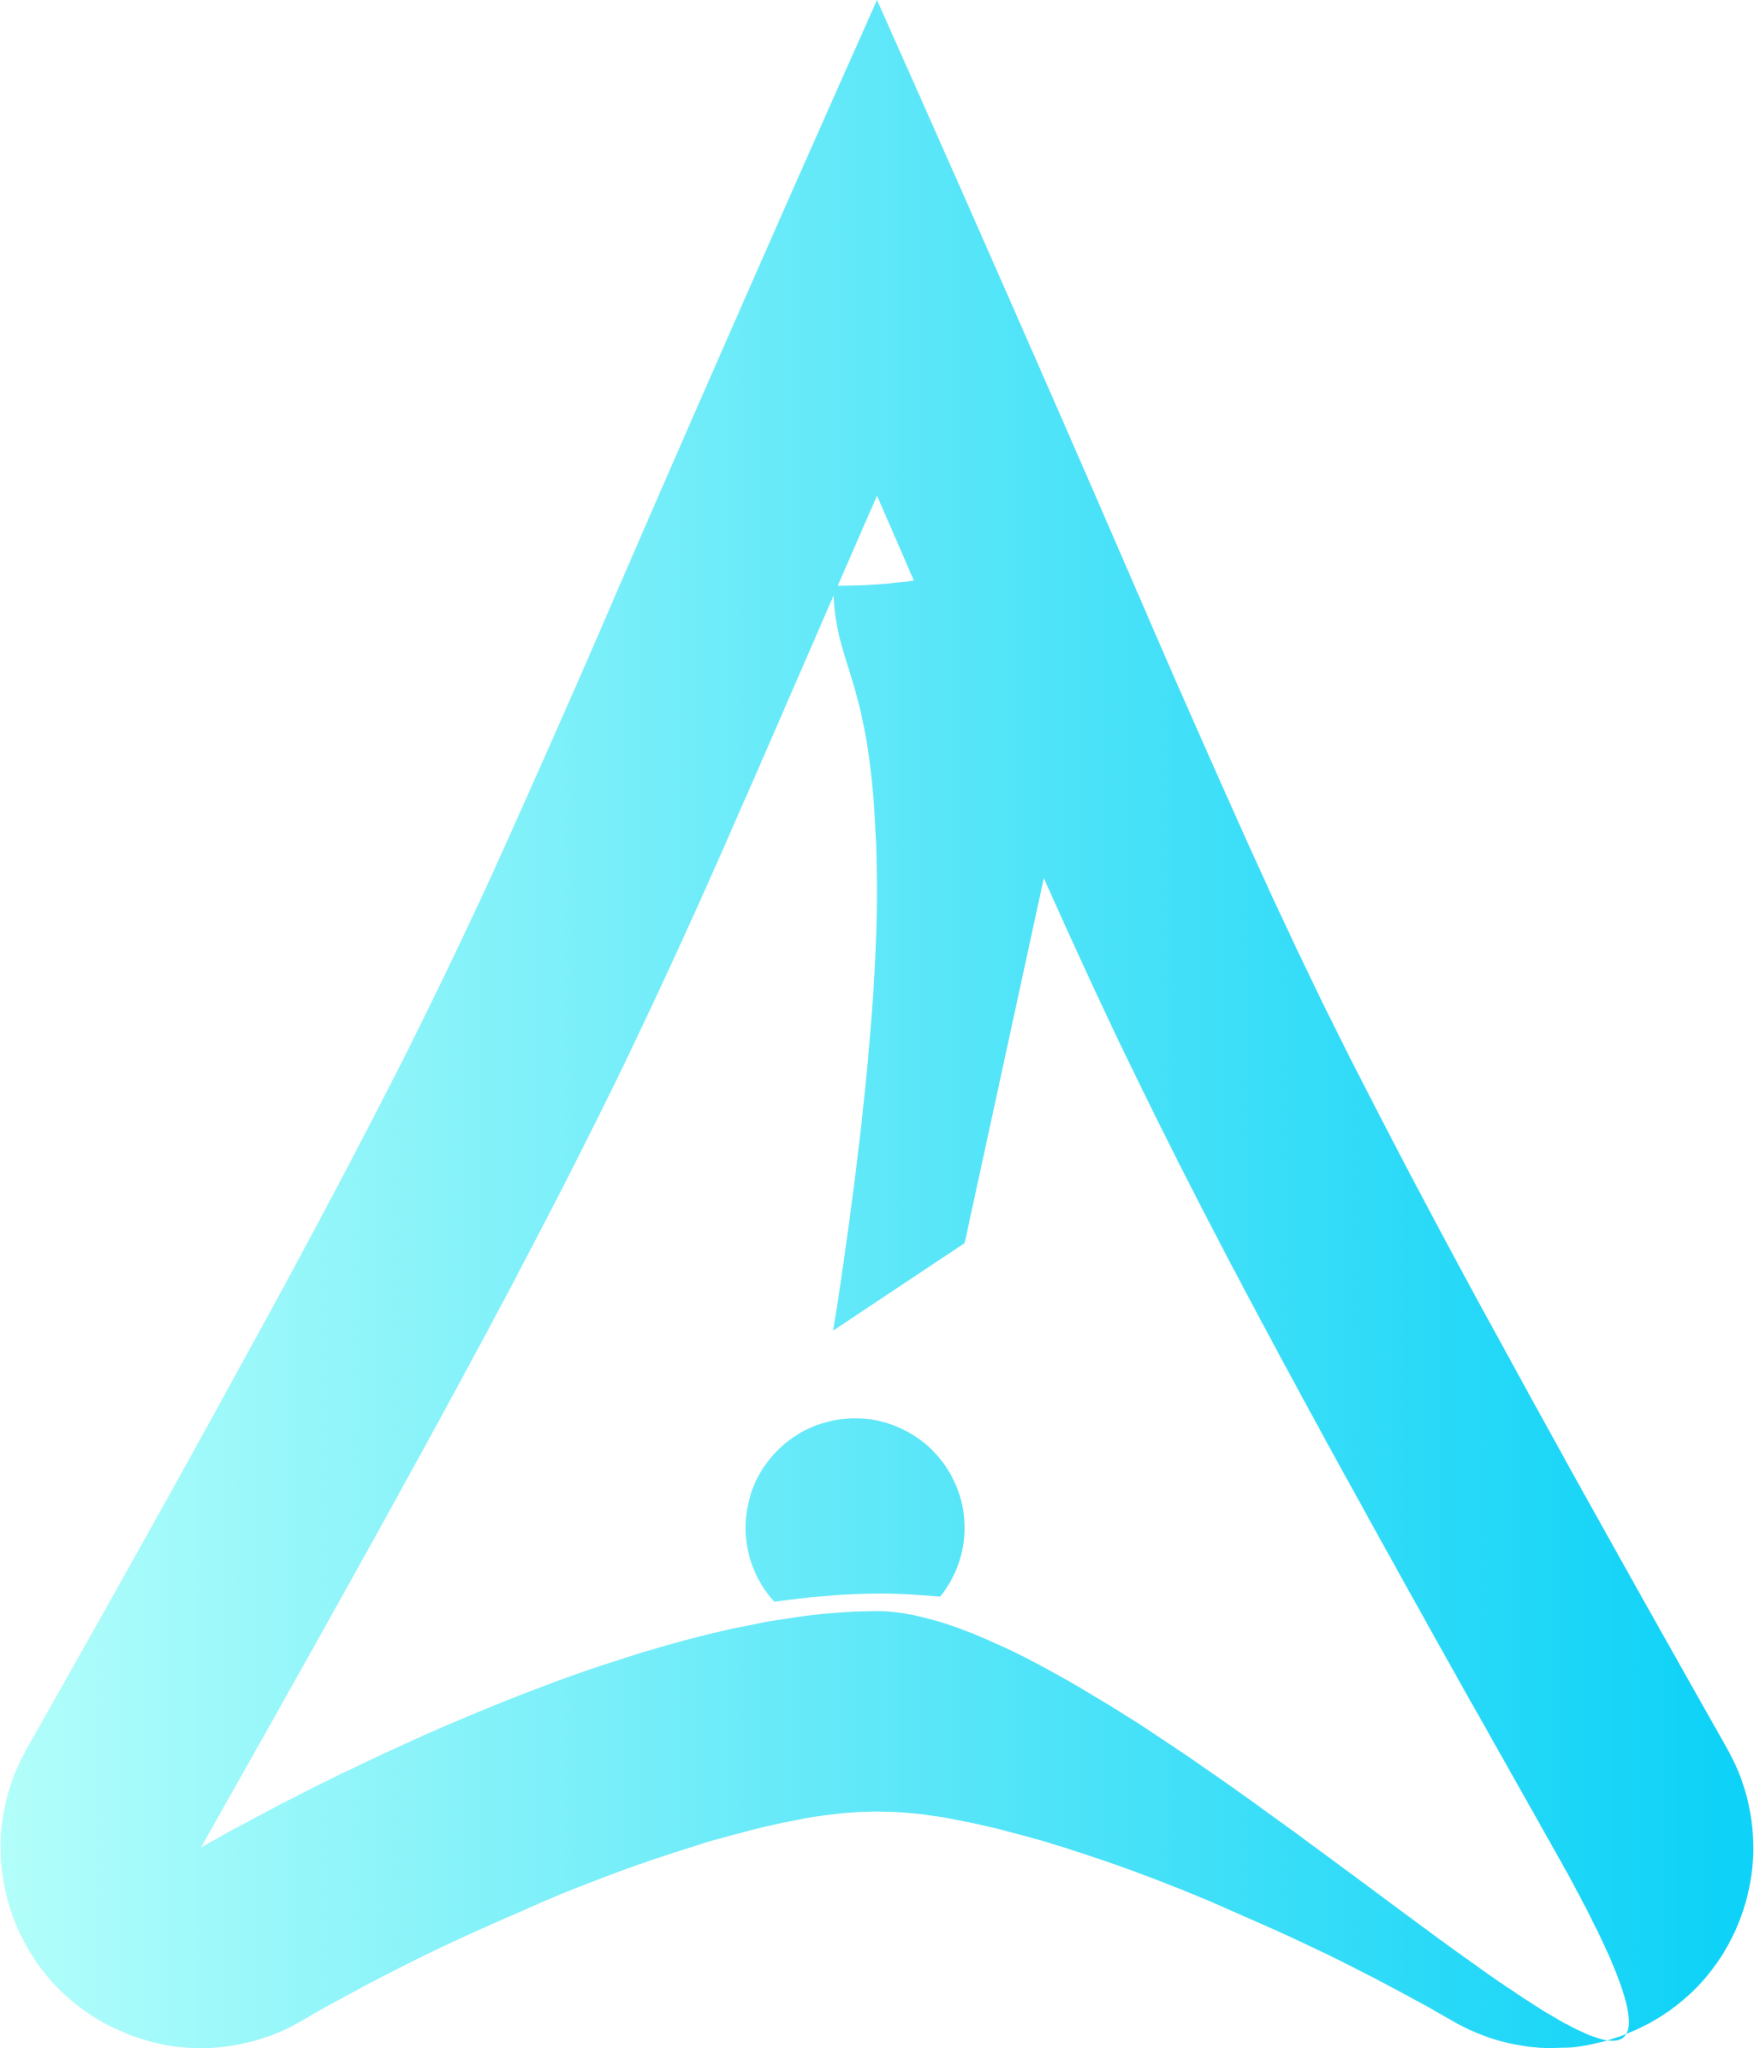 distributor logo archbang icon